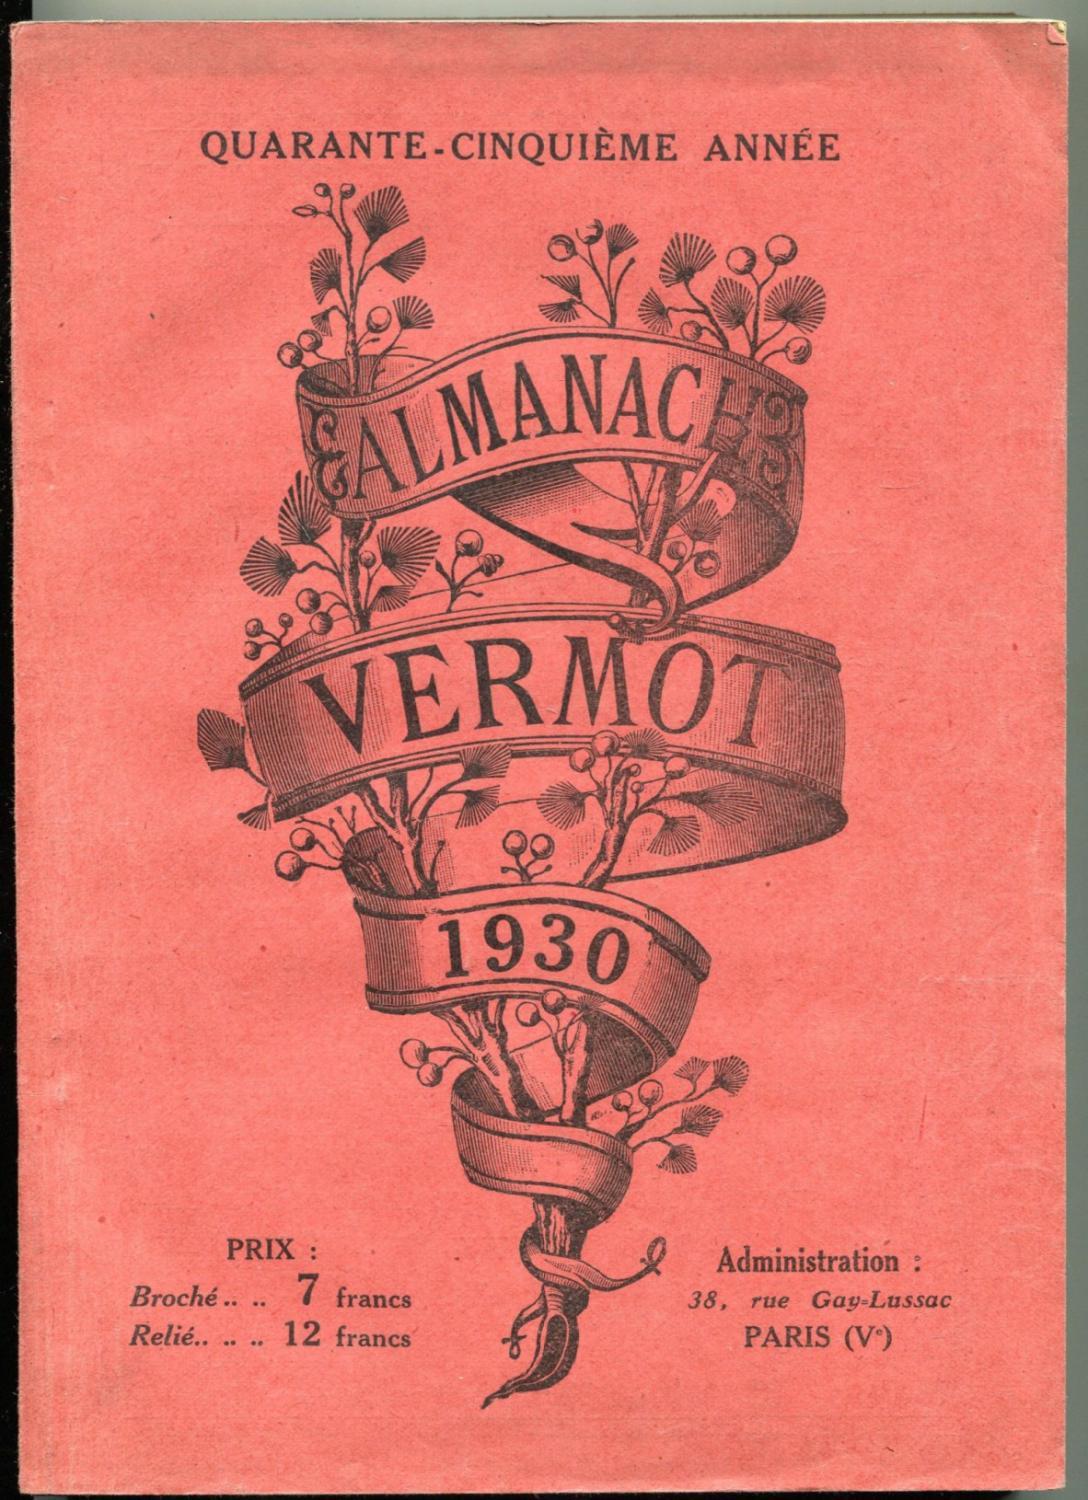 Almanach Vermot 1930. Quarante-cinquième année [vol. 45